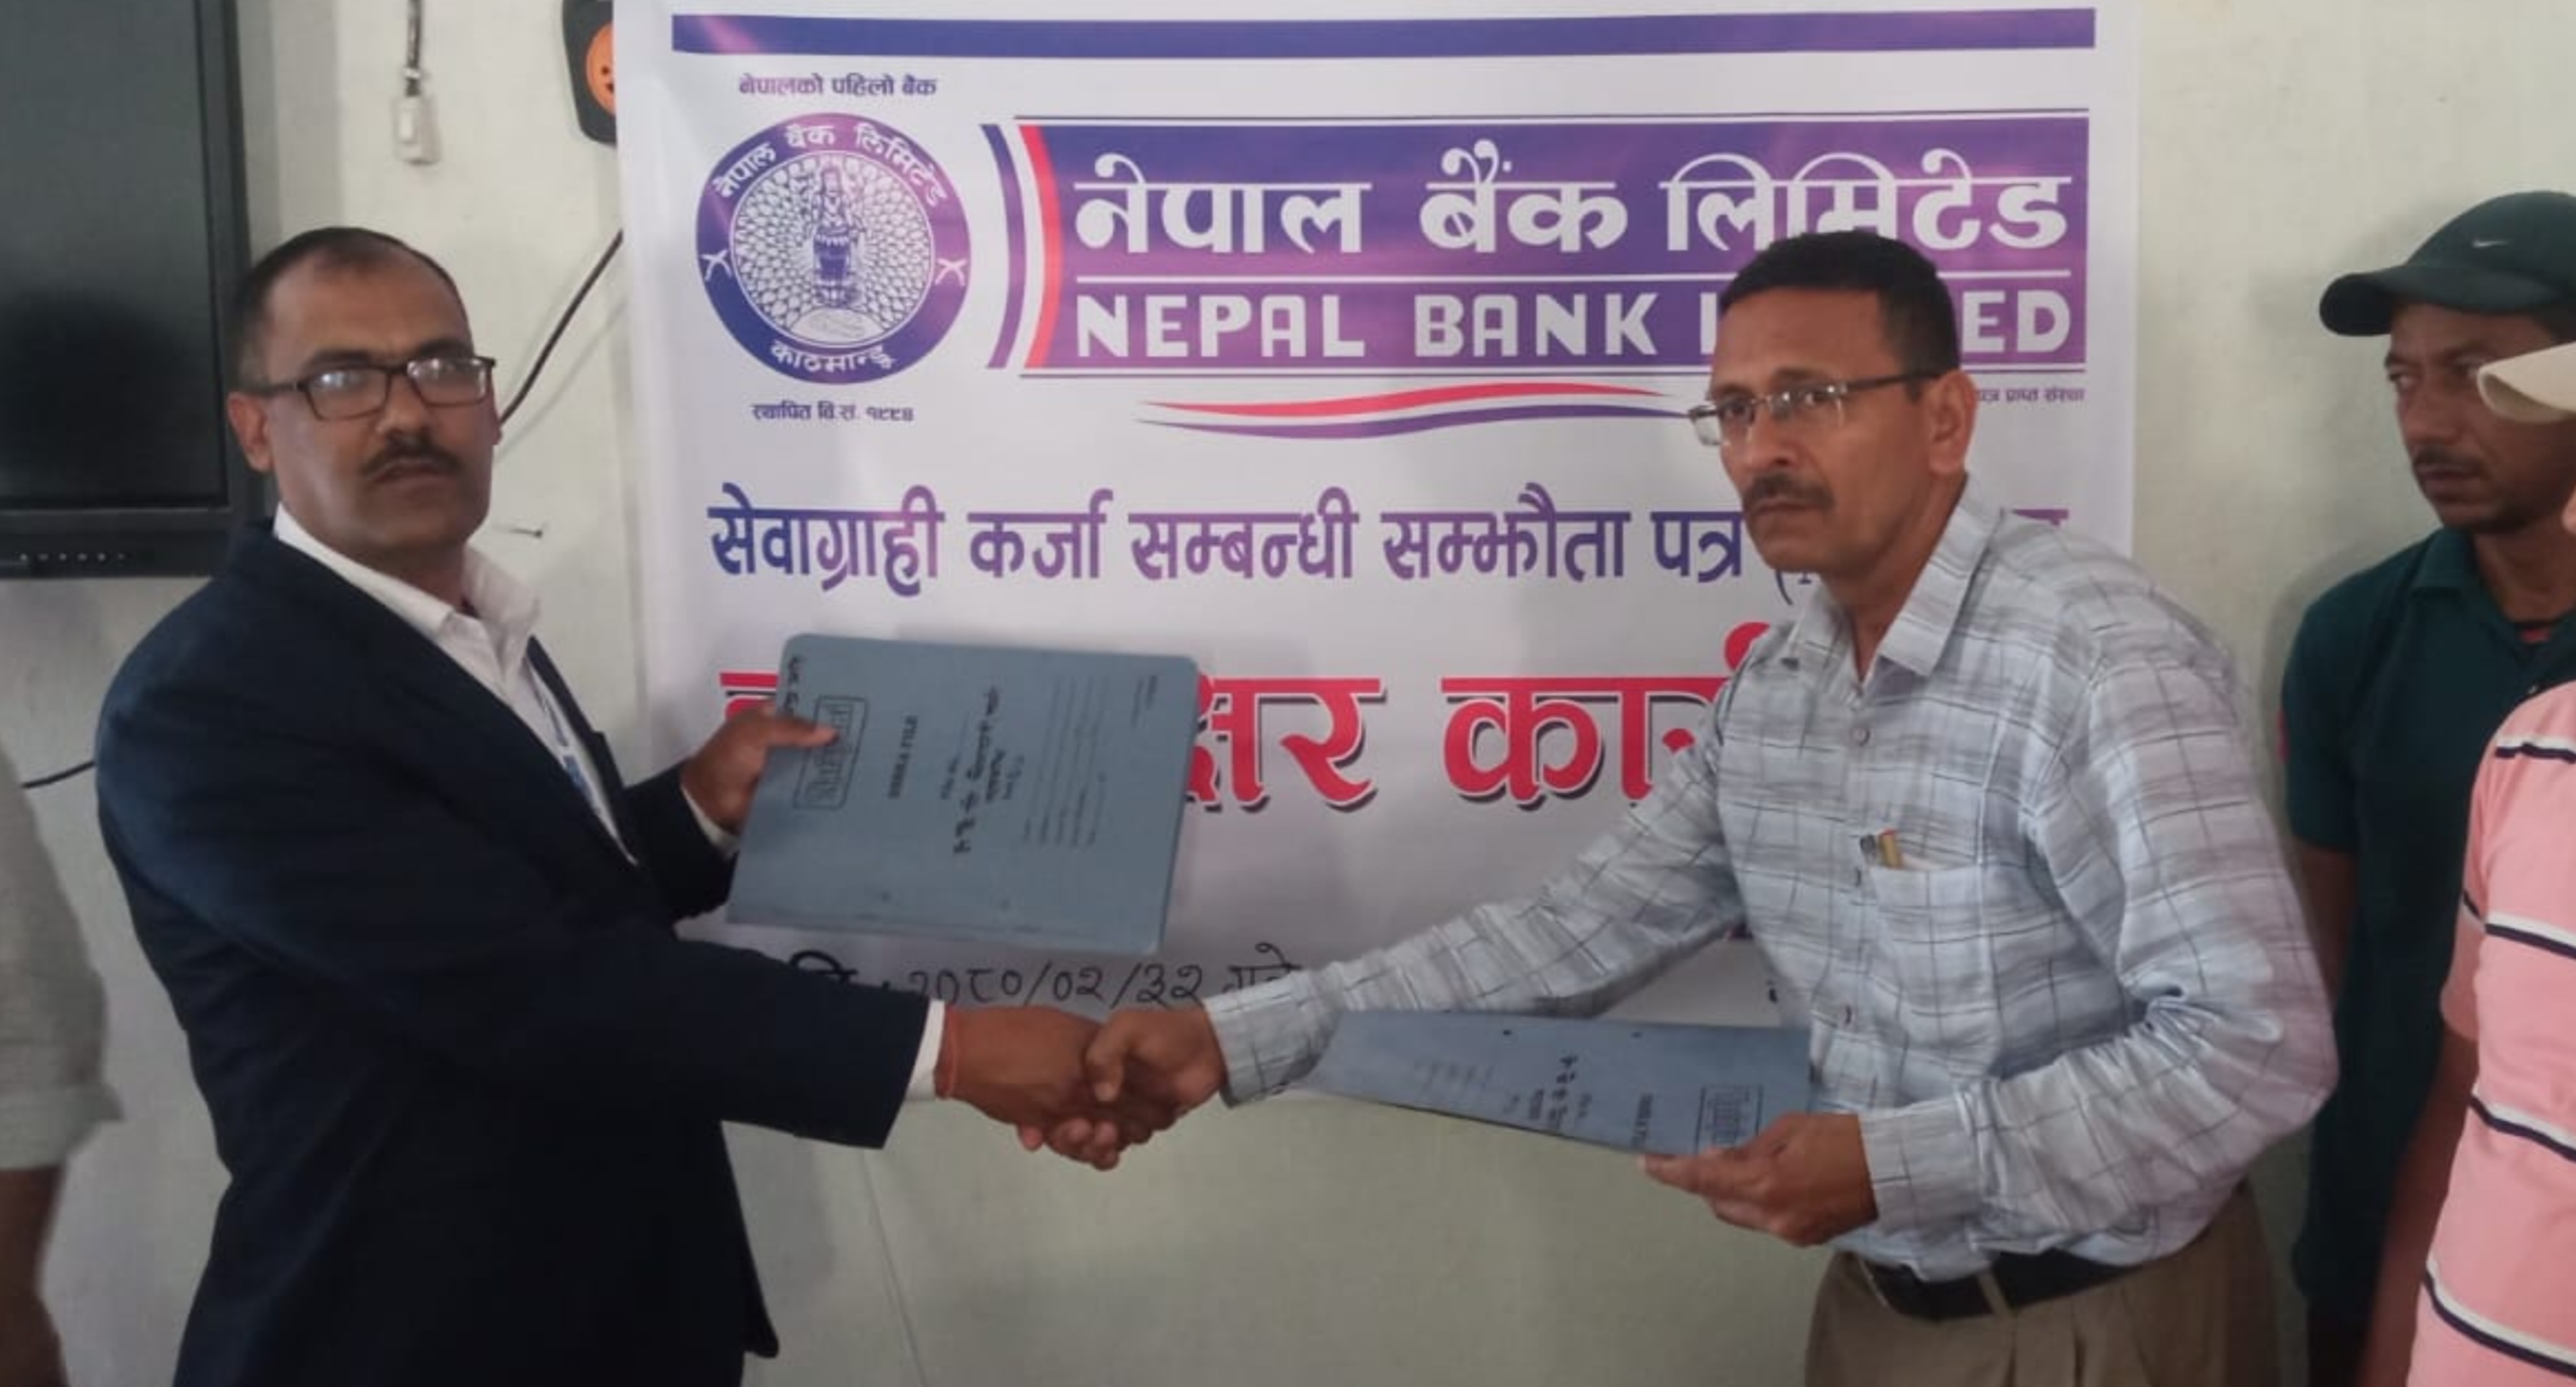 नेपाल बैंक लिमिटेड र गोकुलेश्वर बहुमुखी क्याम्पसबिच सम्झौता पत्र 'एमओयु' मा हस्ताक्षर